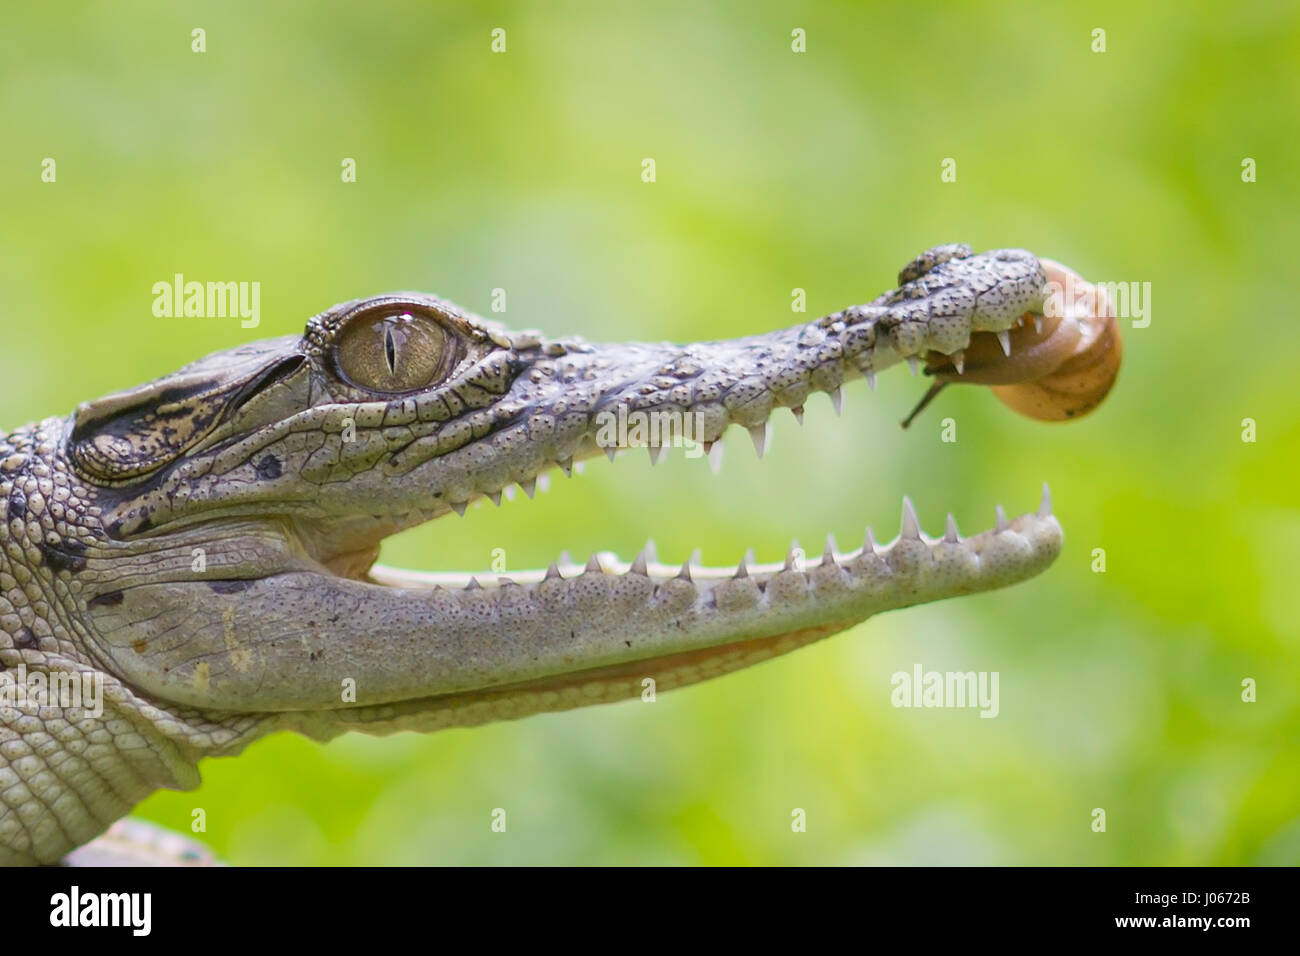 Süd-JAKARTA, Indonesien: Witzige Bilder zeigen im Moment eine brave Schnecke langsam wagten sich in die offenen Kiefer eines Krokodils. Die ungewöhnliche Fotos zeigen der gewagten Schnecke gleiten, das Reptil Nasenspitze vor peering innerhalb der seinen Mund und schließlich bewegte innen. In einem letzten Schuss sehen die Schnecke ruht auf dem Krokodil Gaumendach. Unglaublichen Aufnahmen stammen von Roni Kurniawan (26) aus Pondok Pinang, etwas außerhalb von Süd-Jakarta Jakarta, Indonesien. Um die Fotos aufzunehmen, Roni verwendet eine Canon 600D Kamera. Roni Kurniawan / mediadrumworld.com Stockfoto